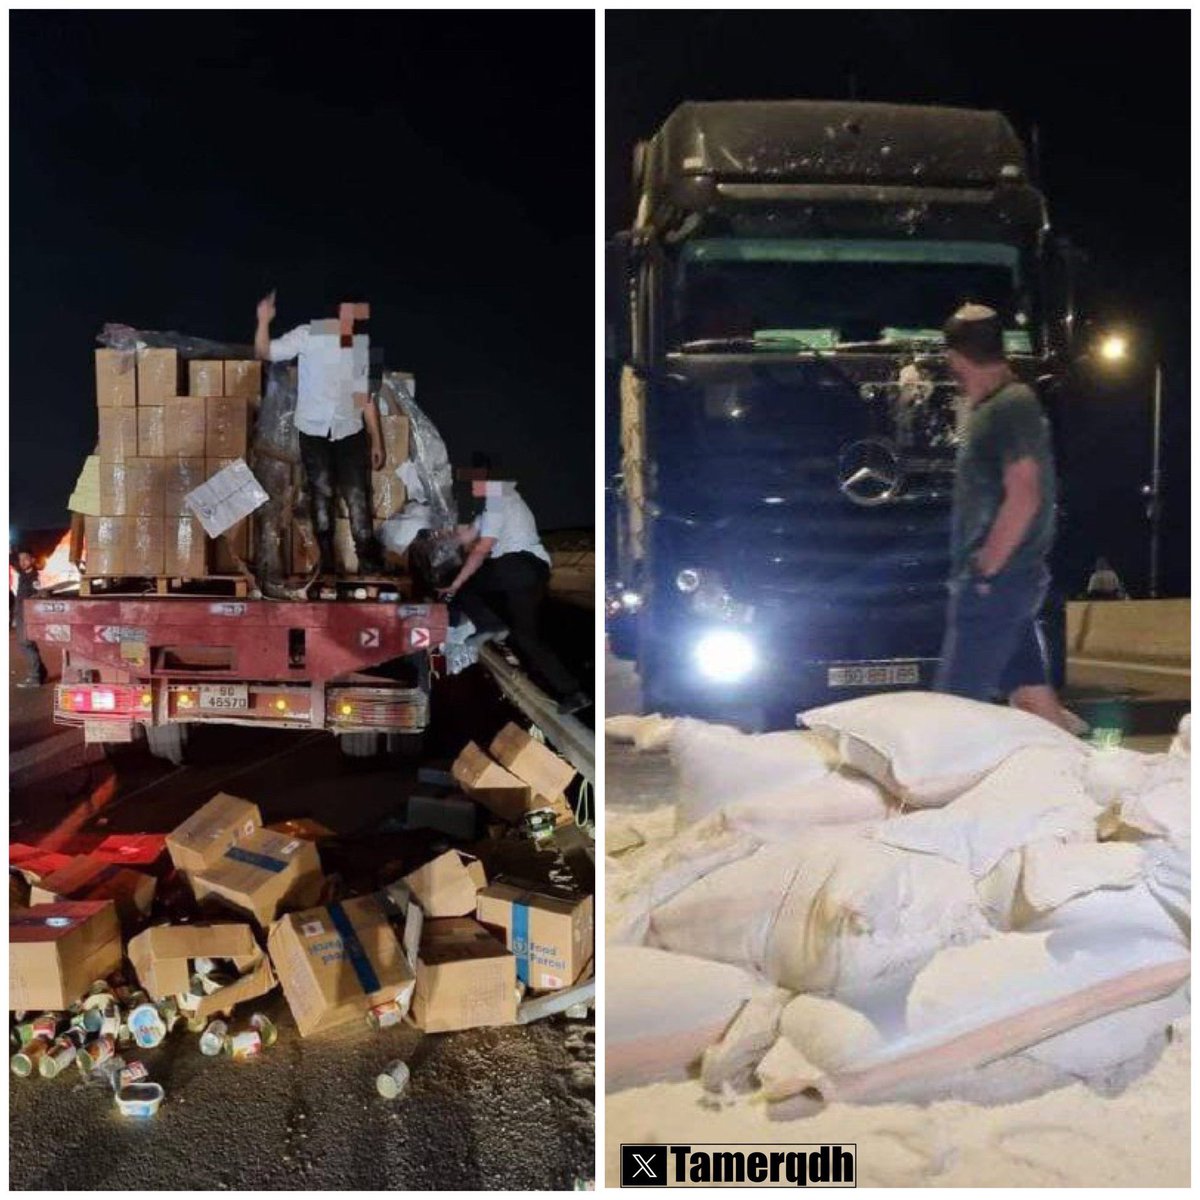 Des colons israéliens ont attaqué un convoi humanitaire en route vers Gaza, agressé les chauffeurs des camions et jetés l’aide sur la route.

Mais, évidemment, les victimes c’est eux.